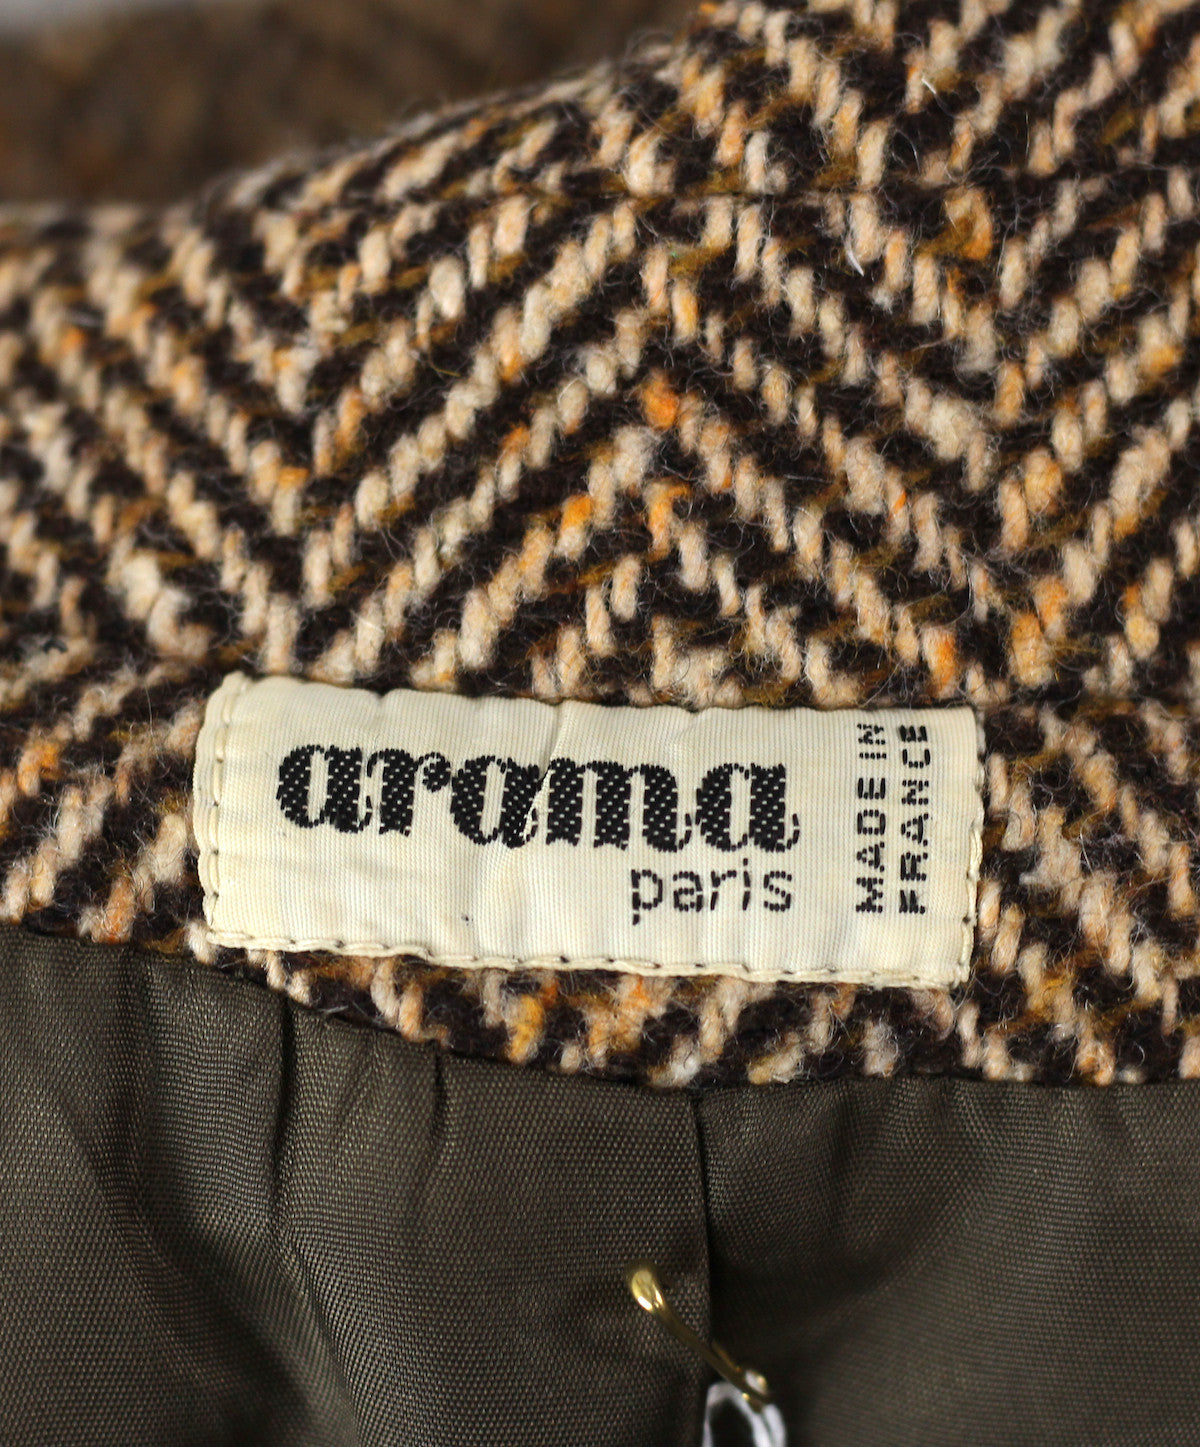 Vintage 1960's Brown Herringbone Wool Coat Made in France